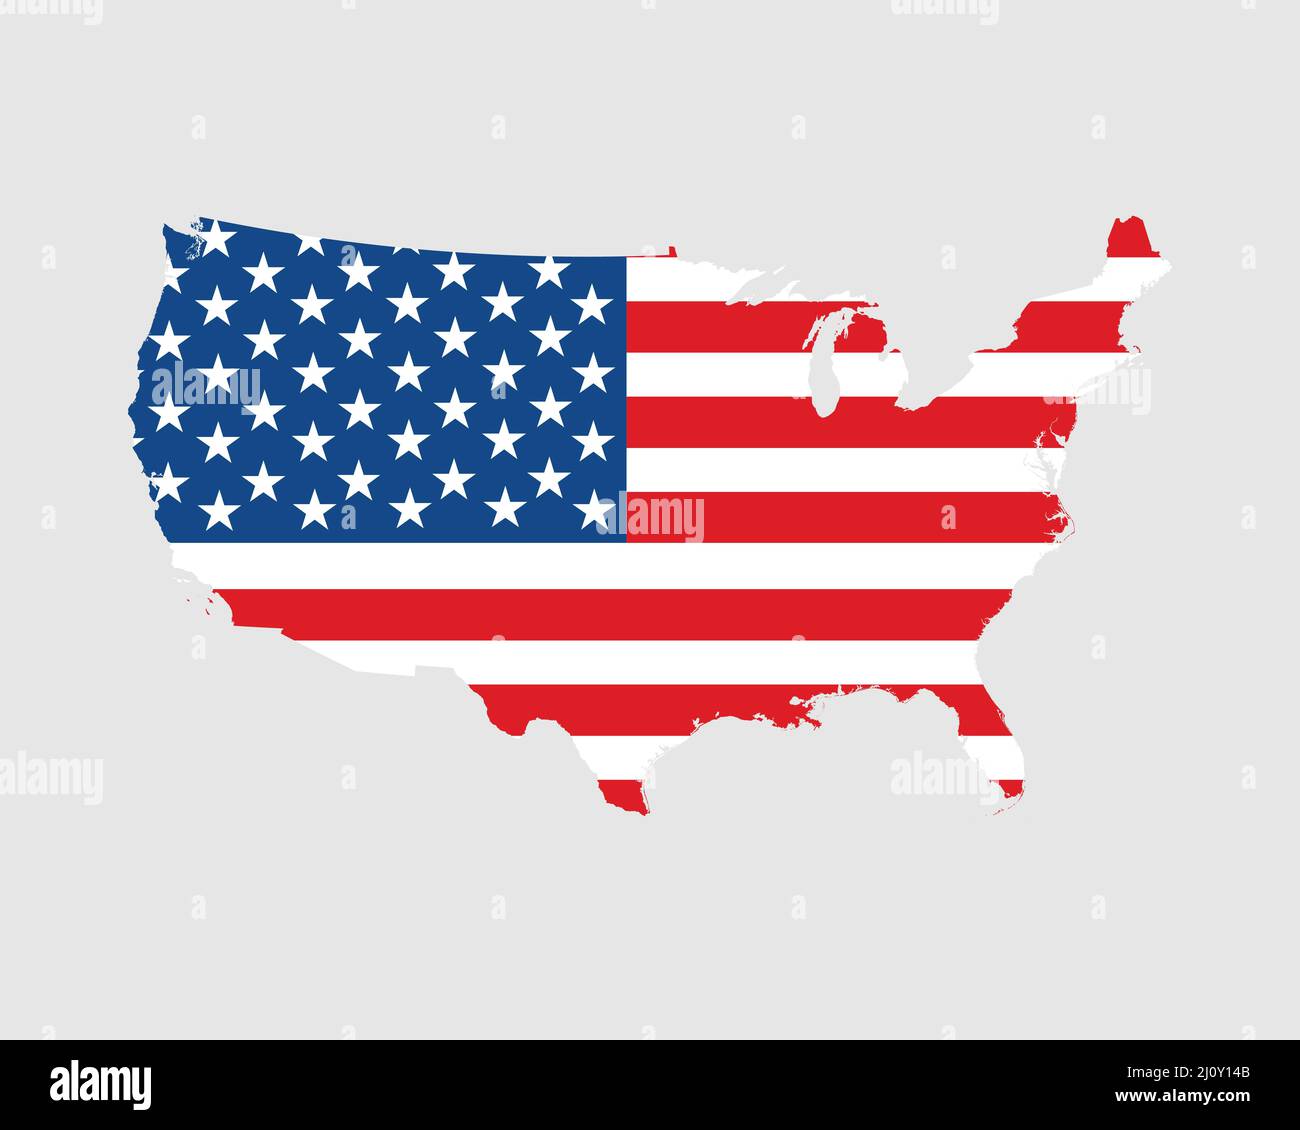 Vereinigte Staaten von Amerika USA Flagge Karte. Karte der USA mit dem amerikanischen Länderbanner. Vektorgrafik. Stock Vektor